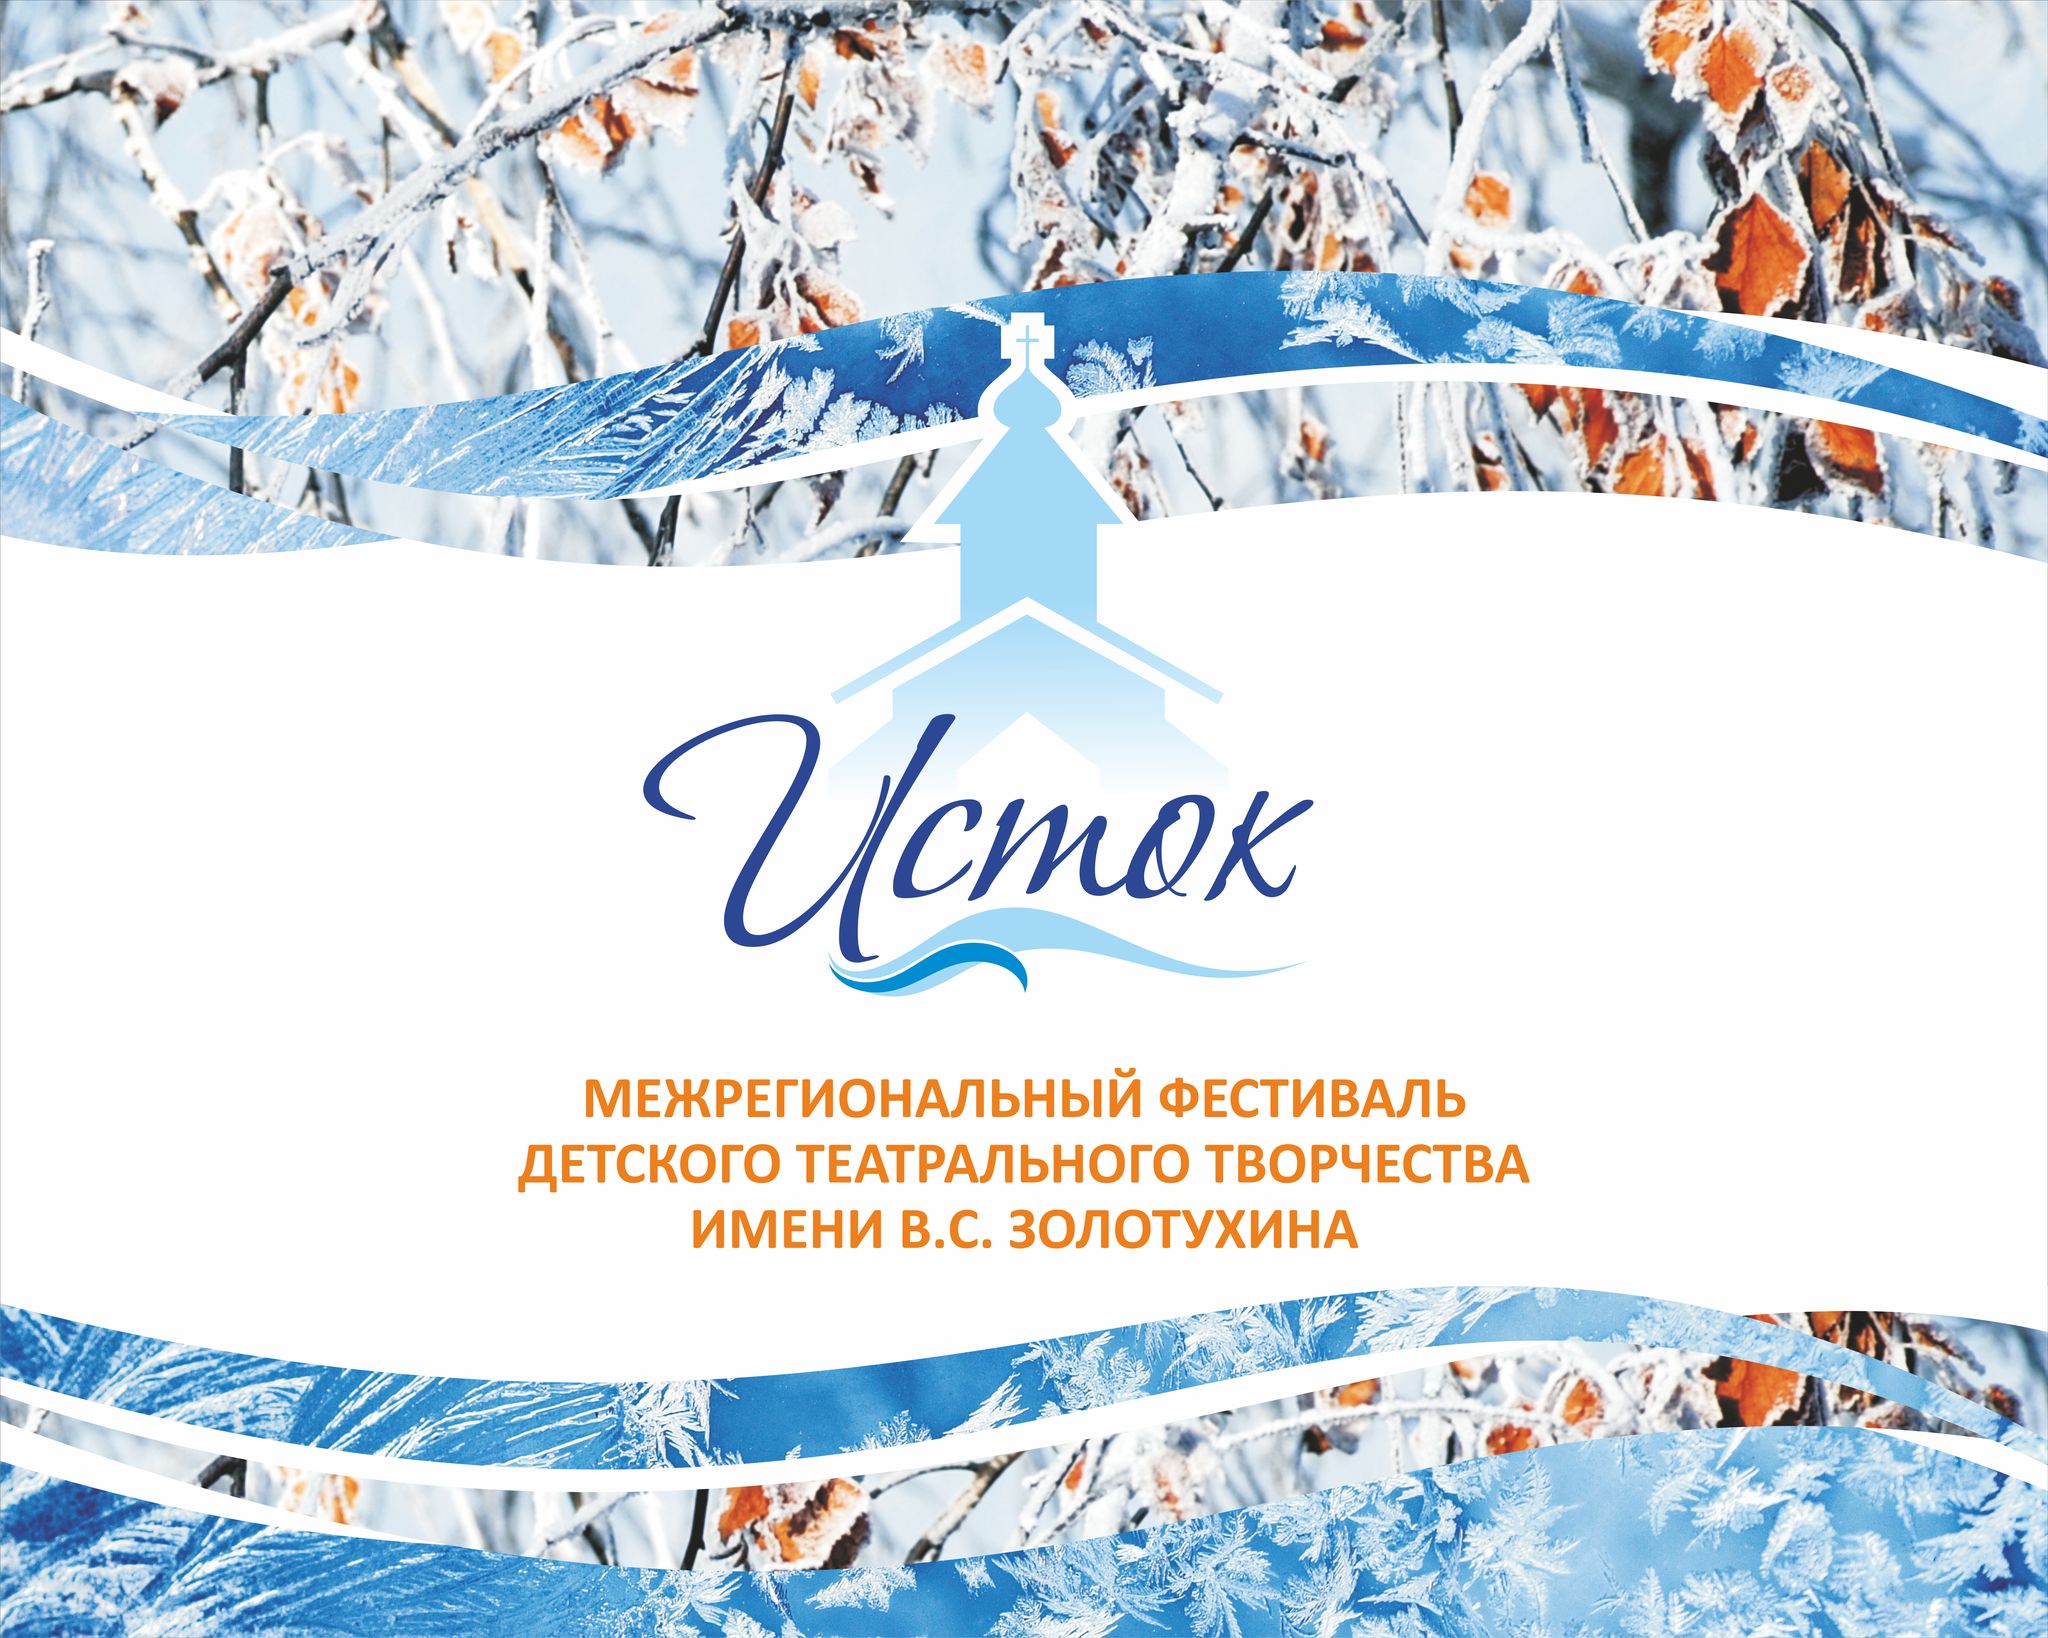 Межрегиональный фестиваль детского театрального творчества имени В.С. Золотухина «ИСТОК» пройдёт в Алтайском крае